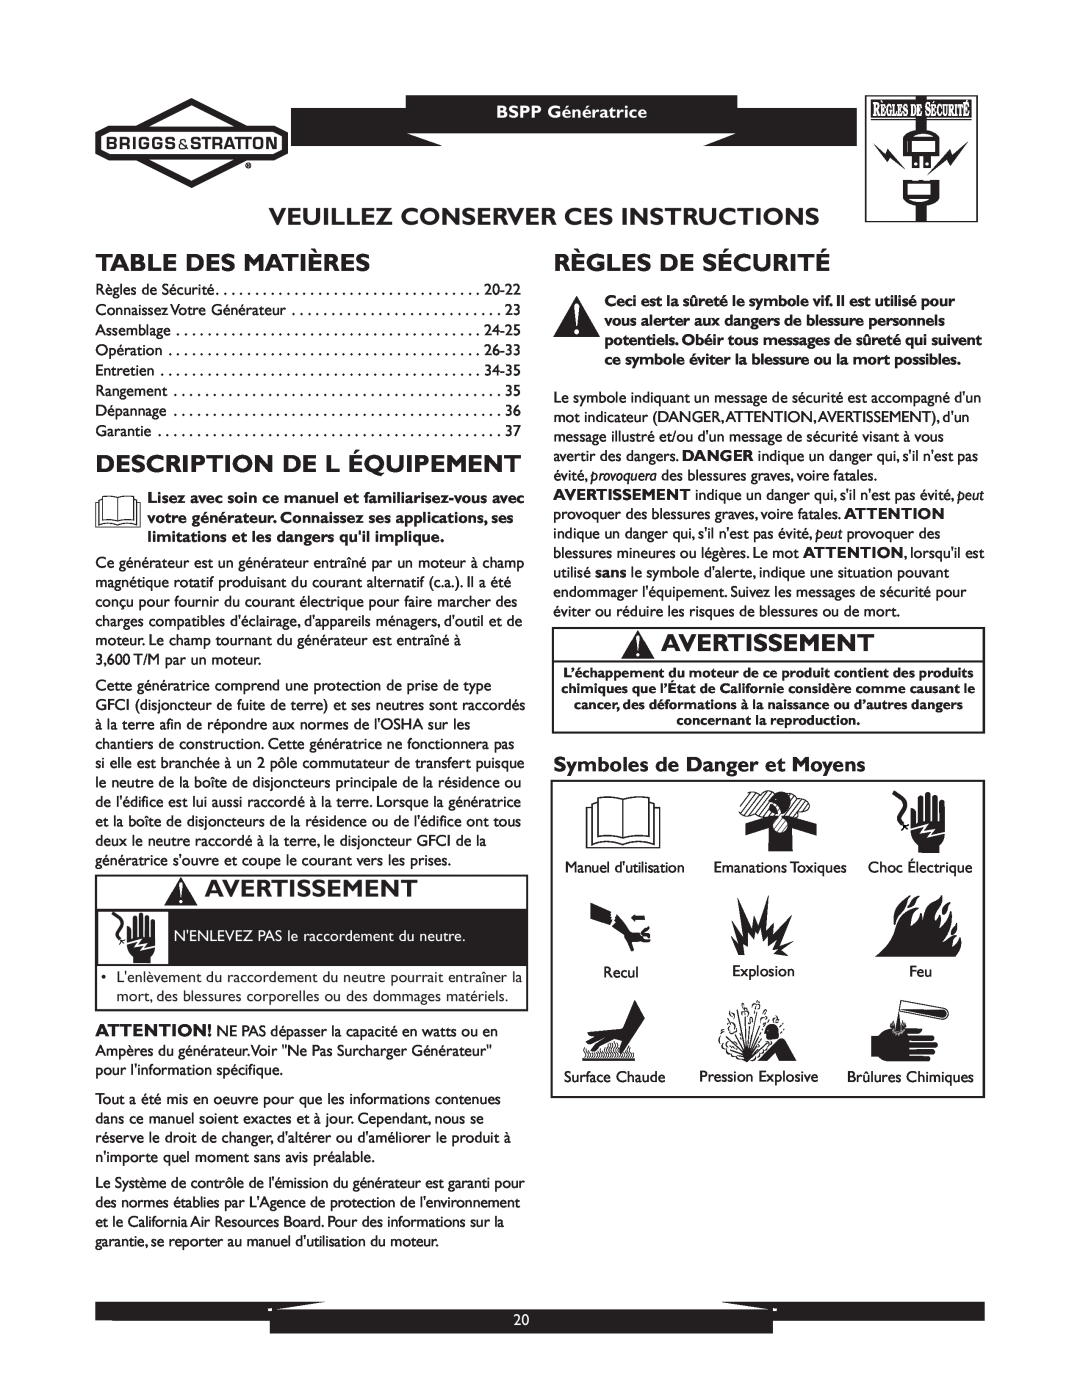 Briggs & Stratton 01933-1 Veuillez Conserver Ces Instructions, Table Des Matières, Description De L Équipement 